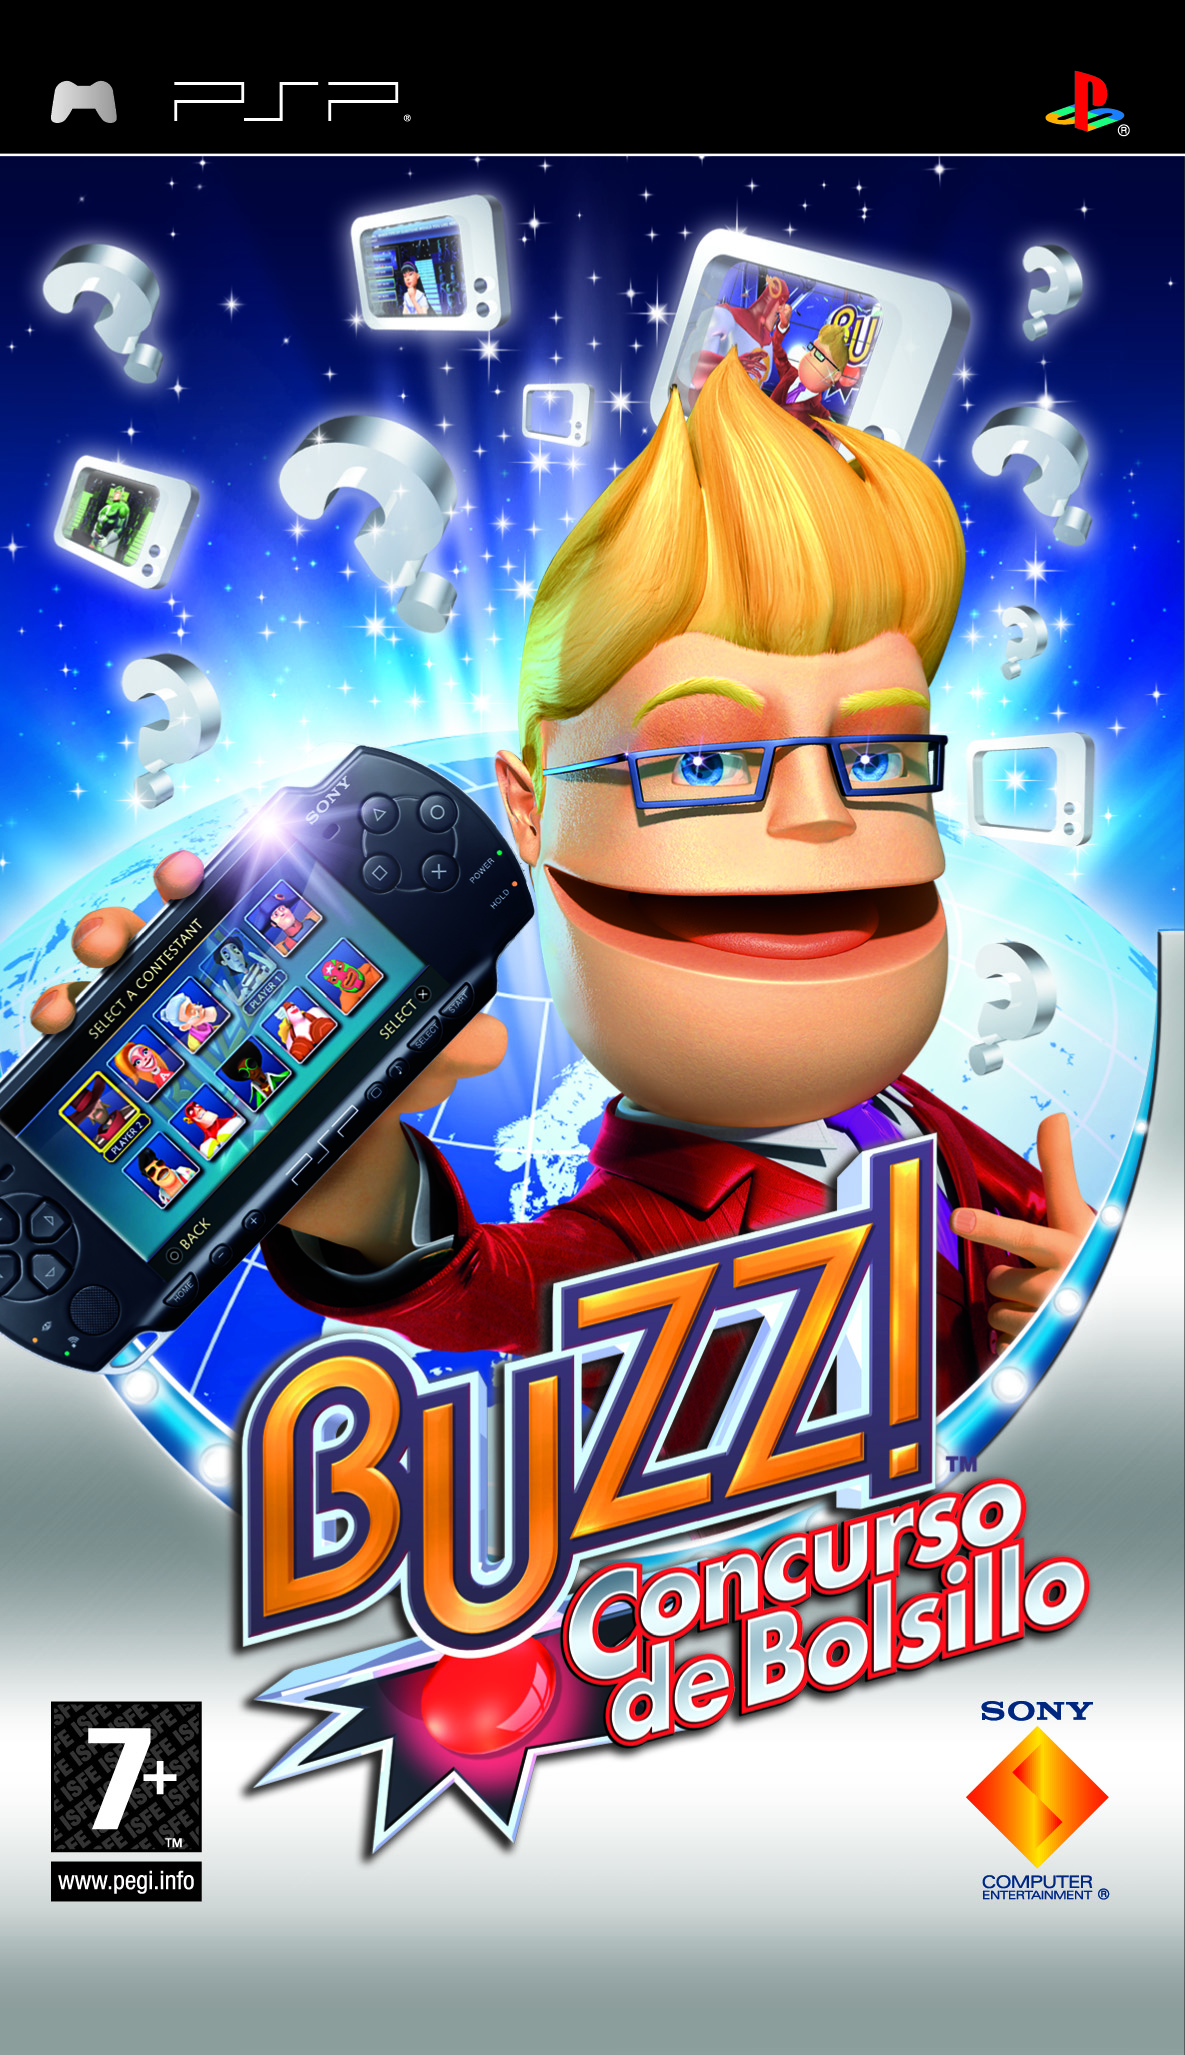 Buzz! Concurso de Bolsillo